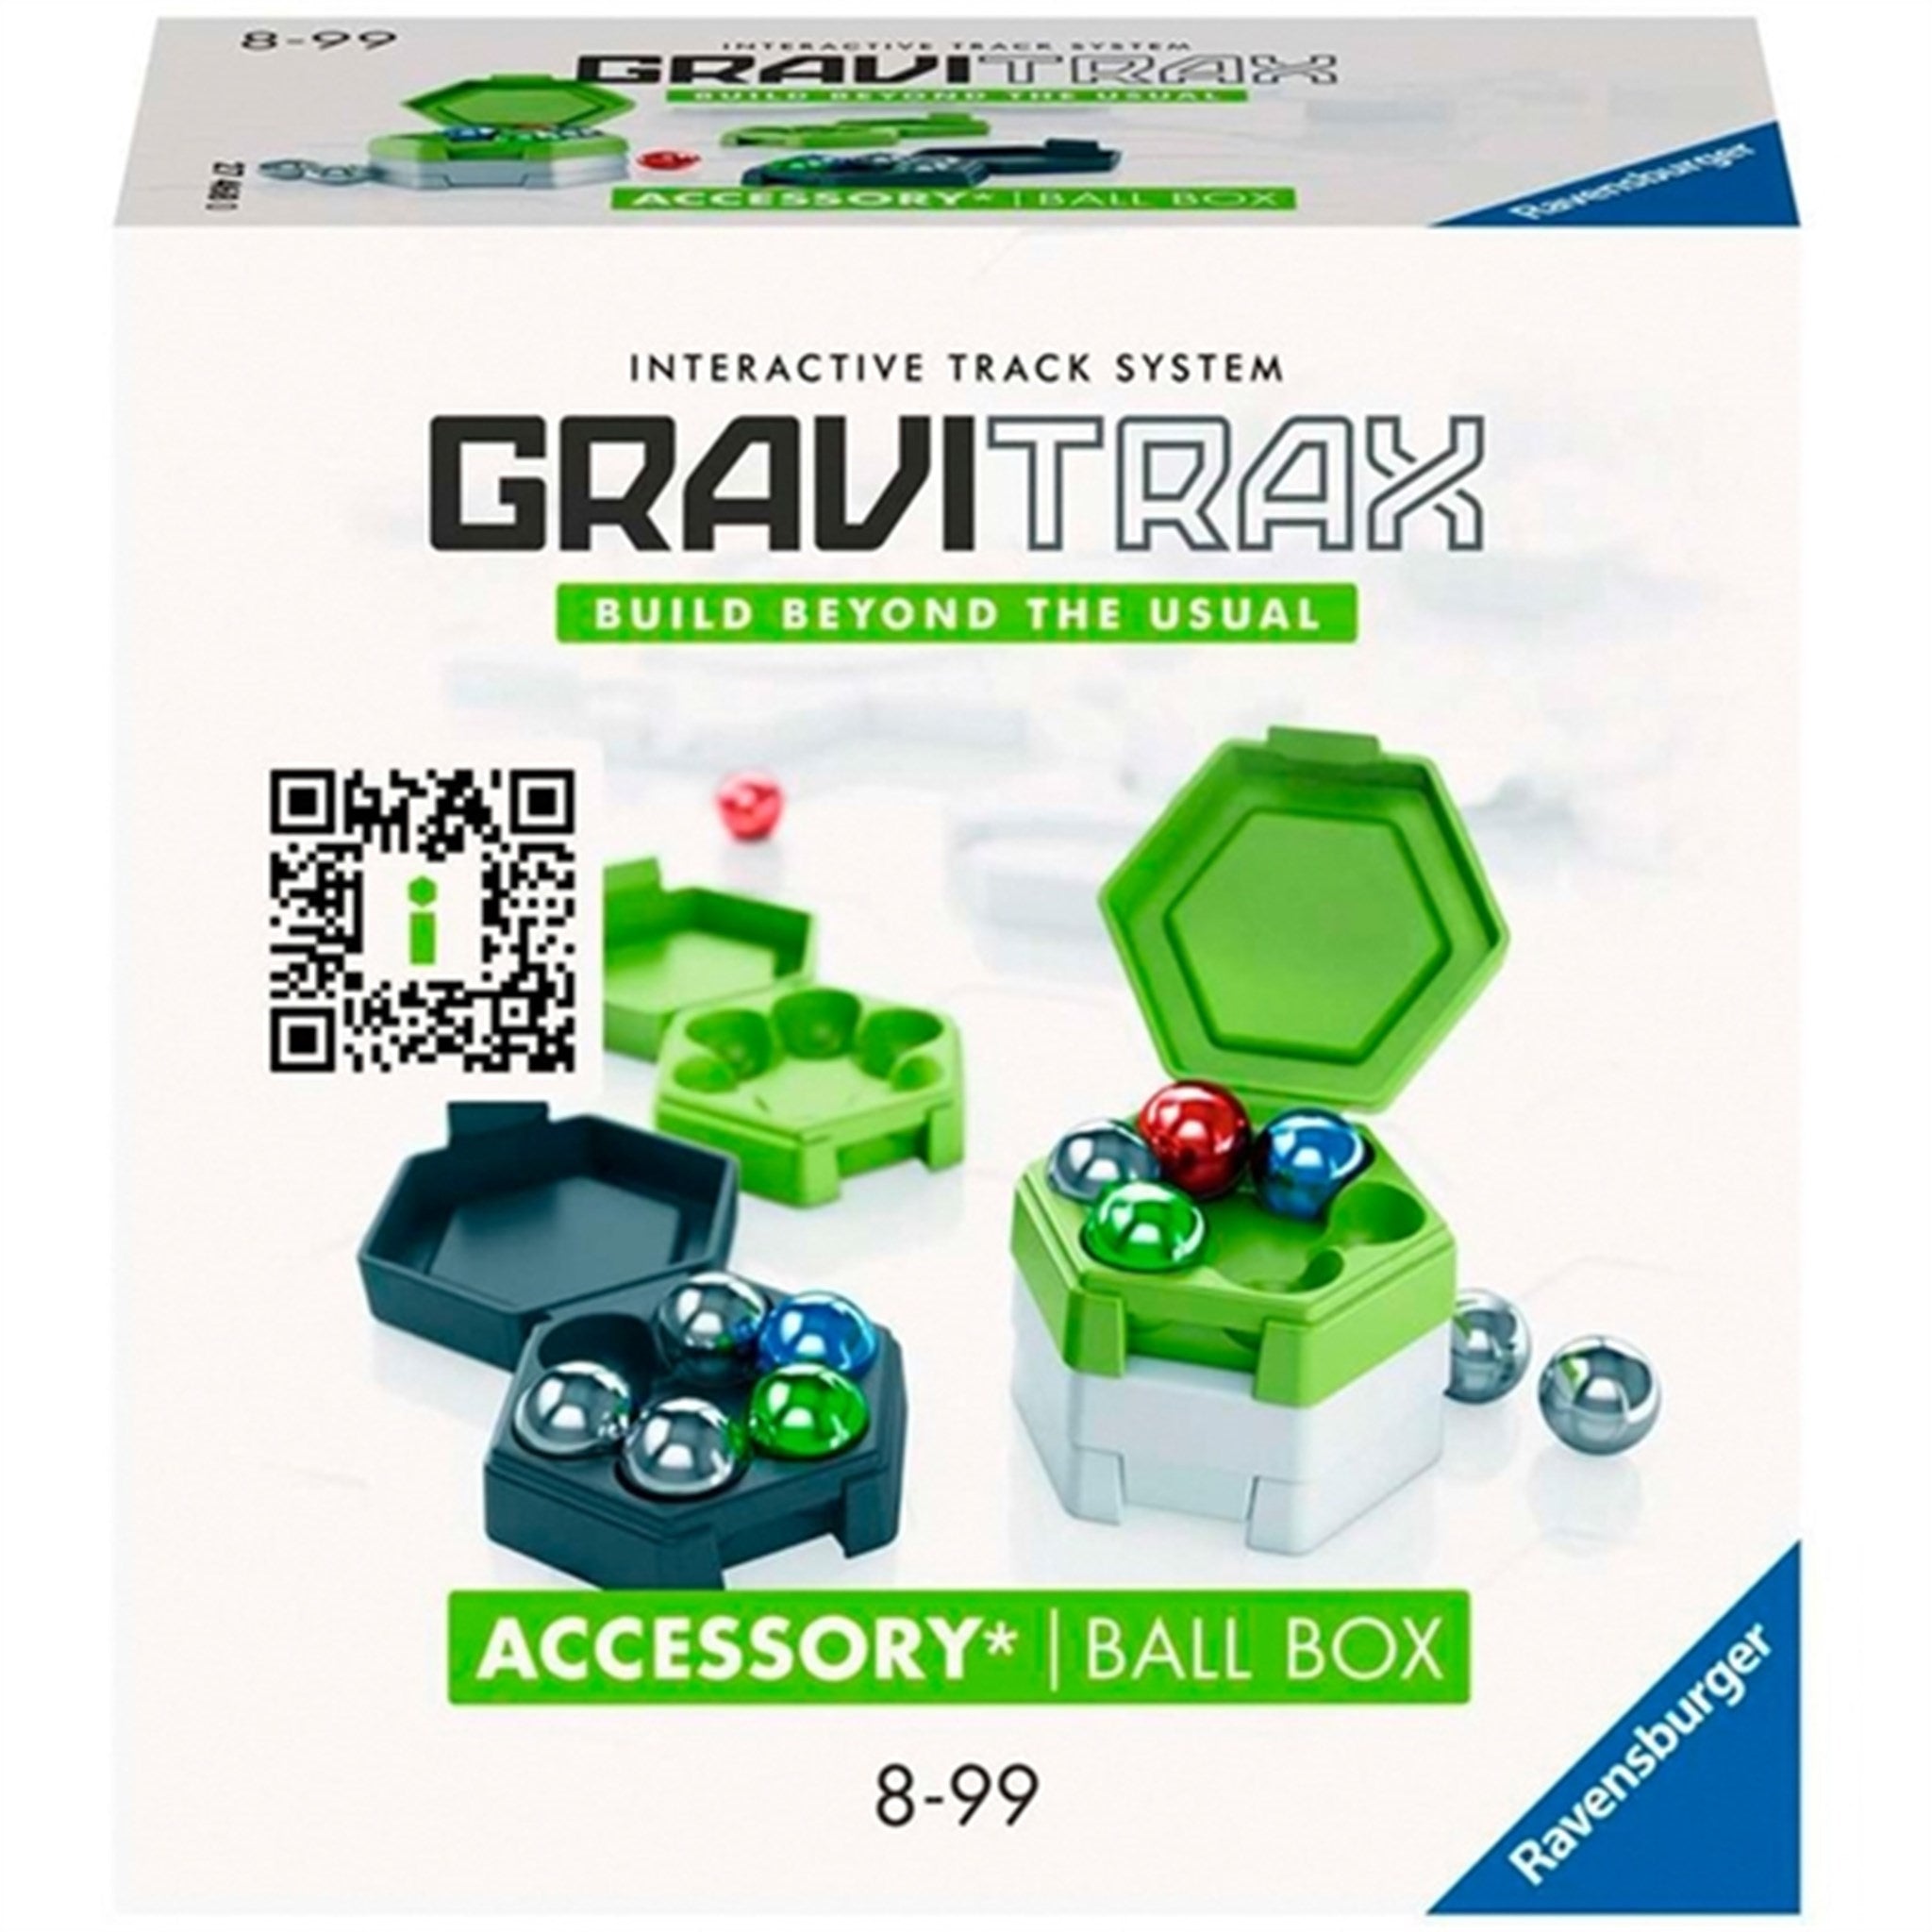 GraviTrax Accessories Box